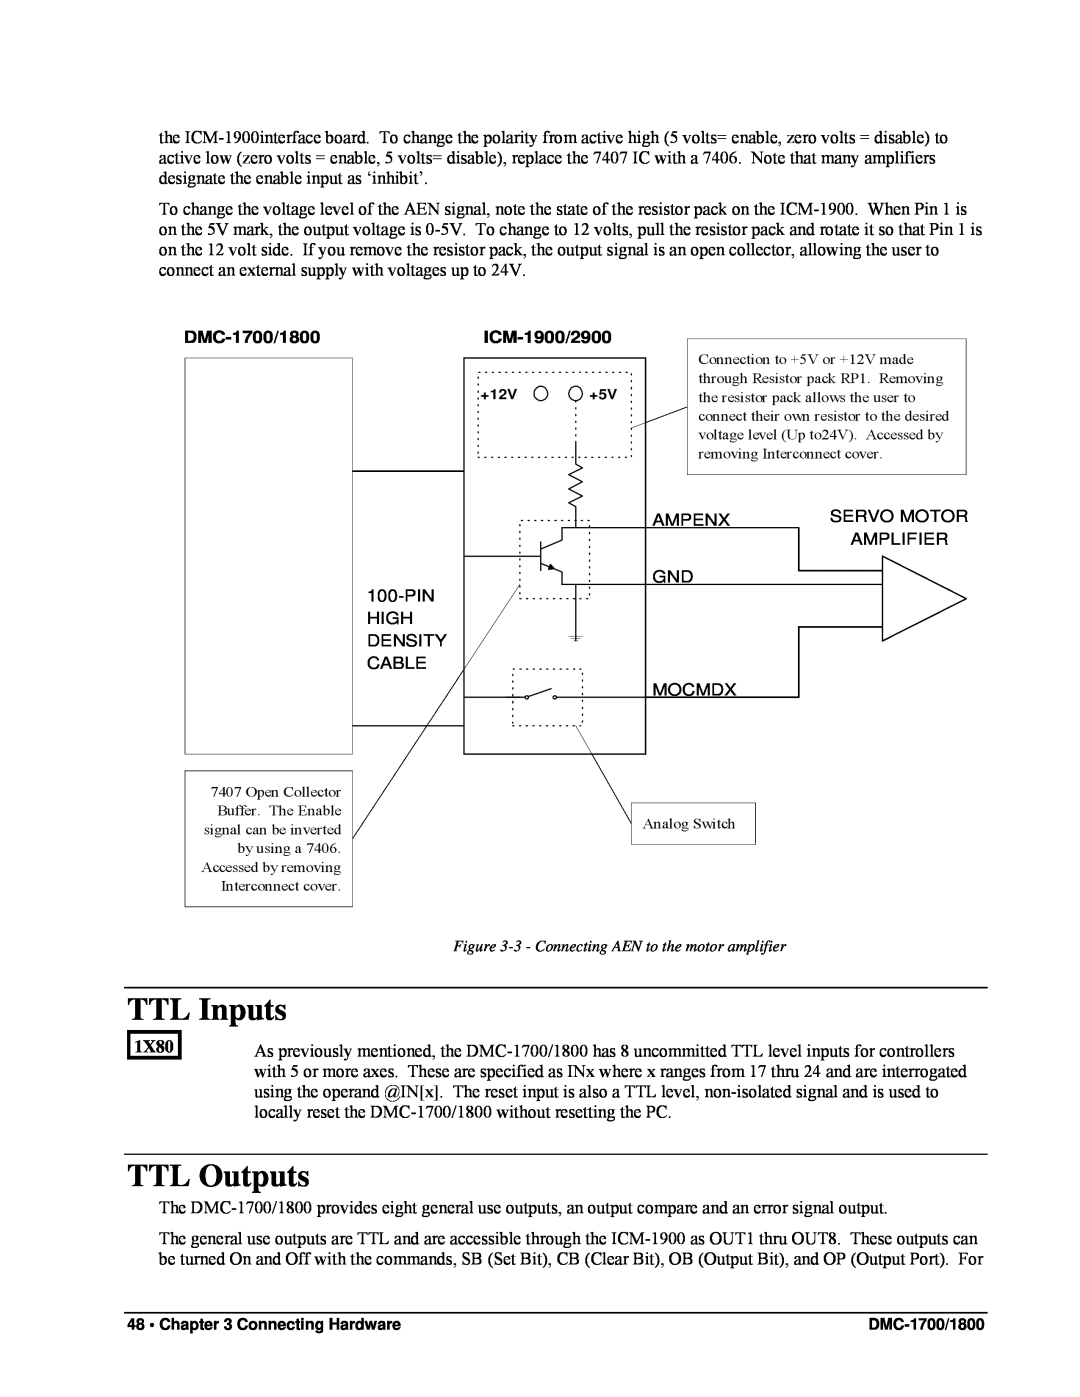 Galil DMC-1800 user manual TTL Inputs, TTL Outputs, DMC-1700/1800, ICM-1900/2900, 1X80 